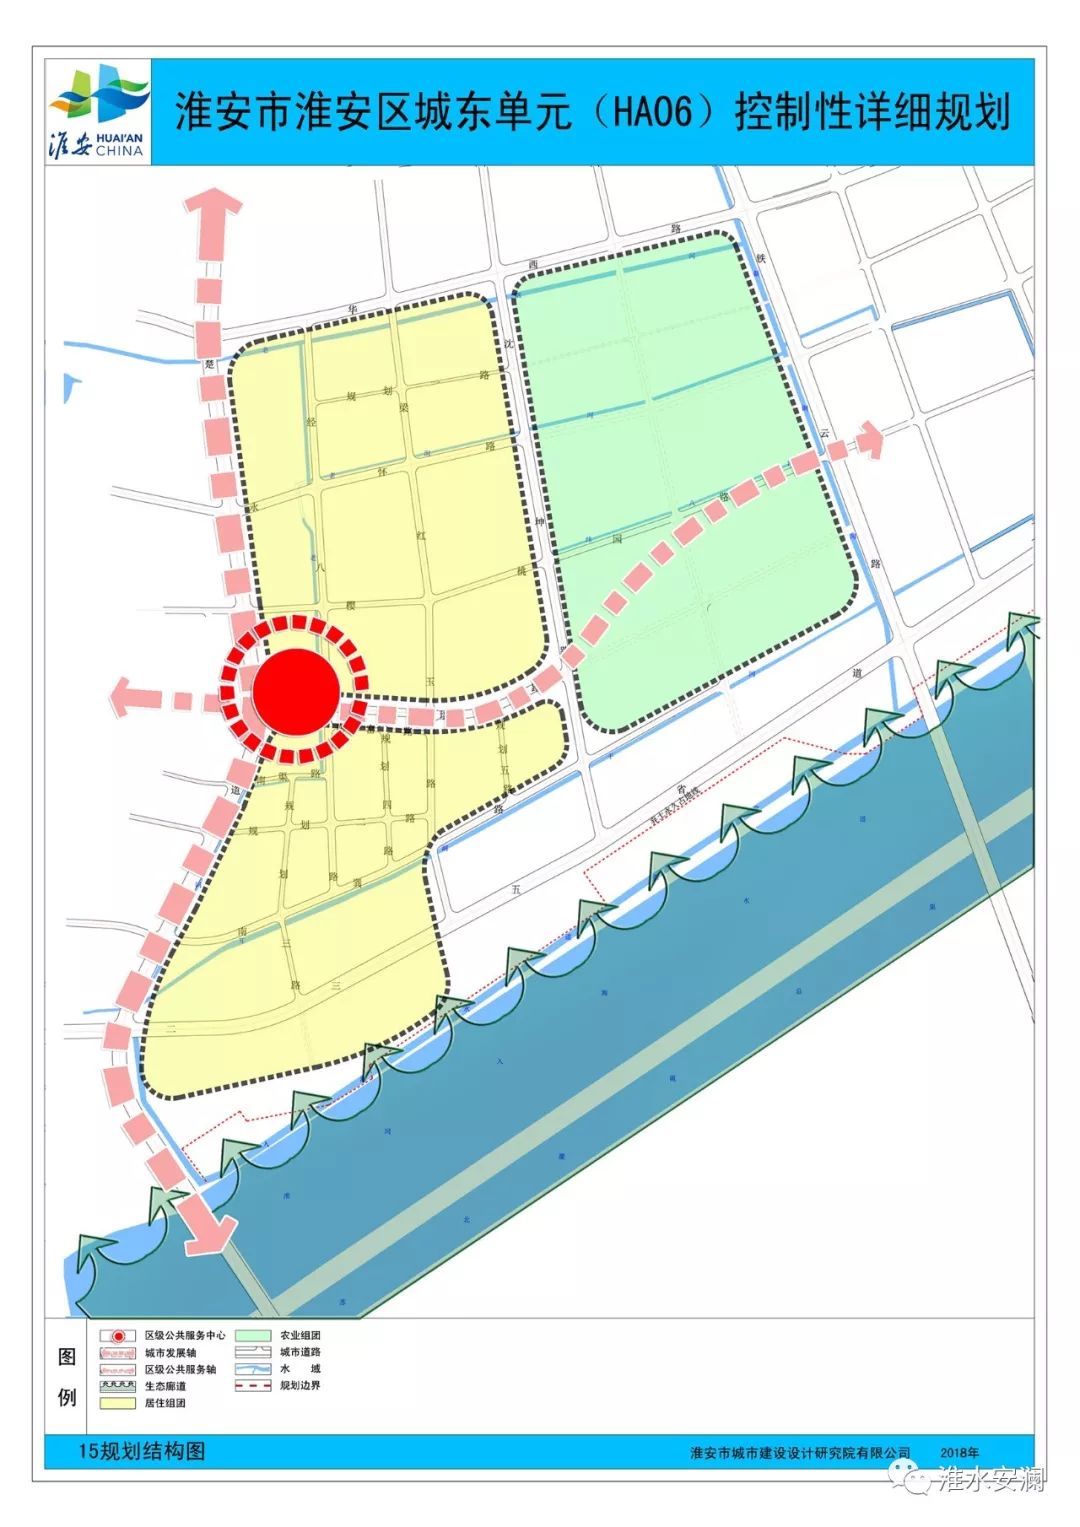 淮安这个区要火城区地块详细规划来了另一小区方案批前公示